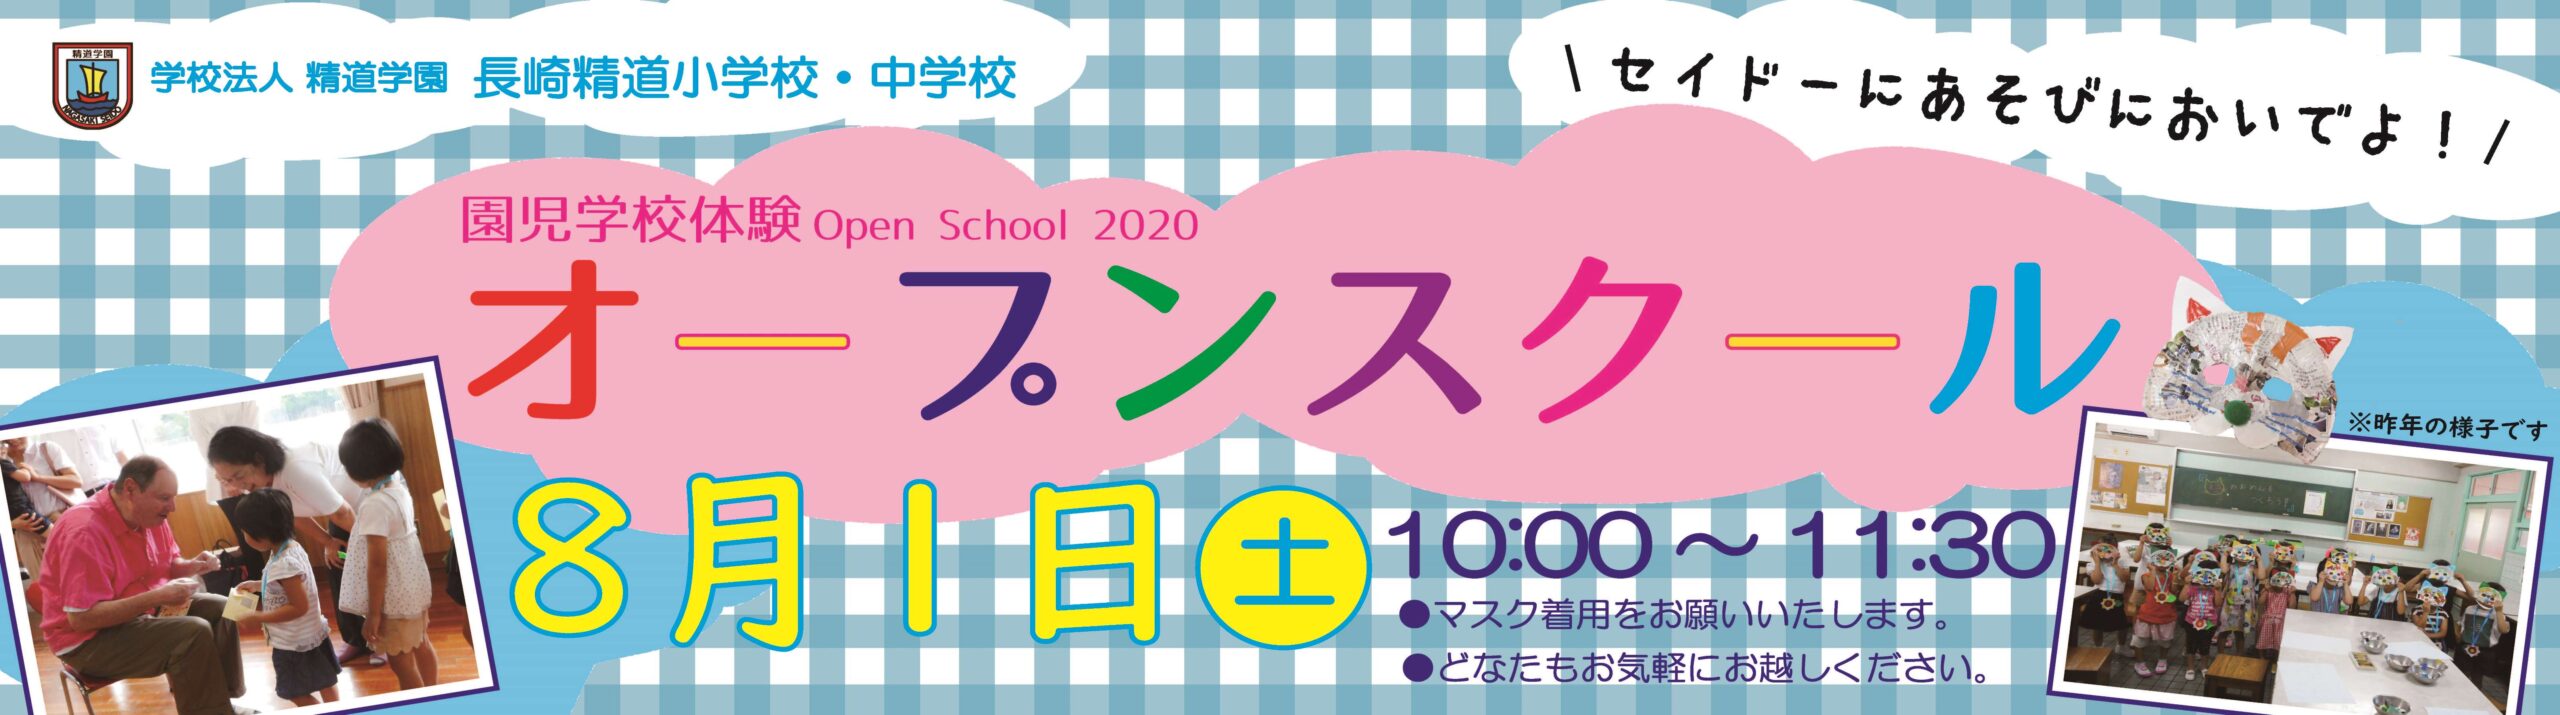 園児対象学校体験「オープンスクール」20200801